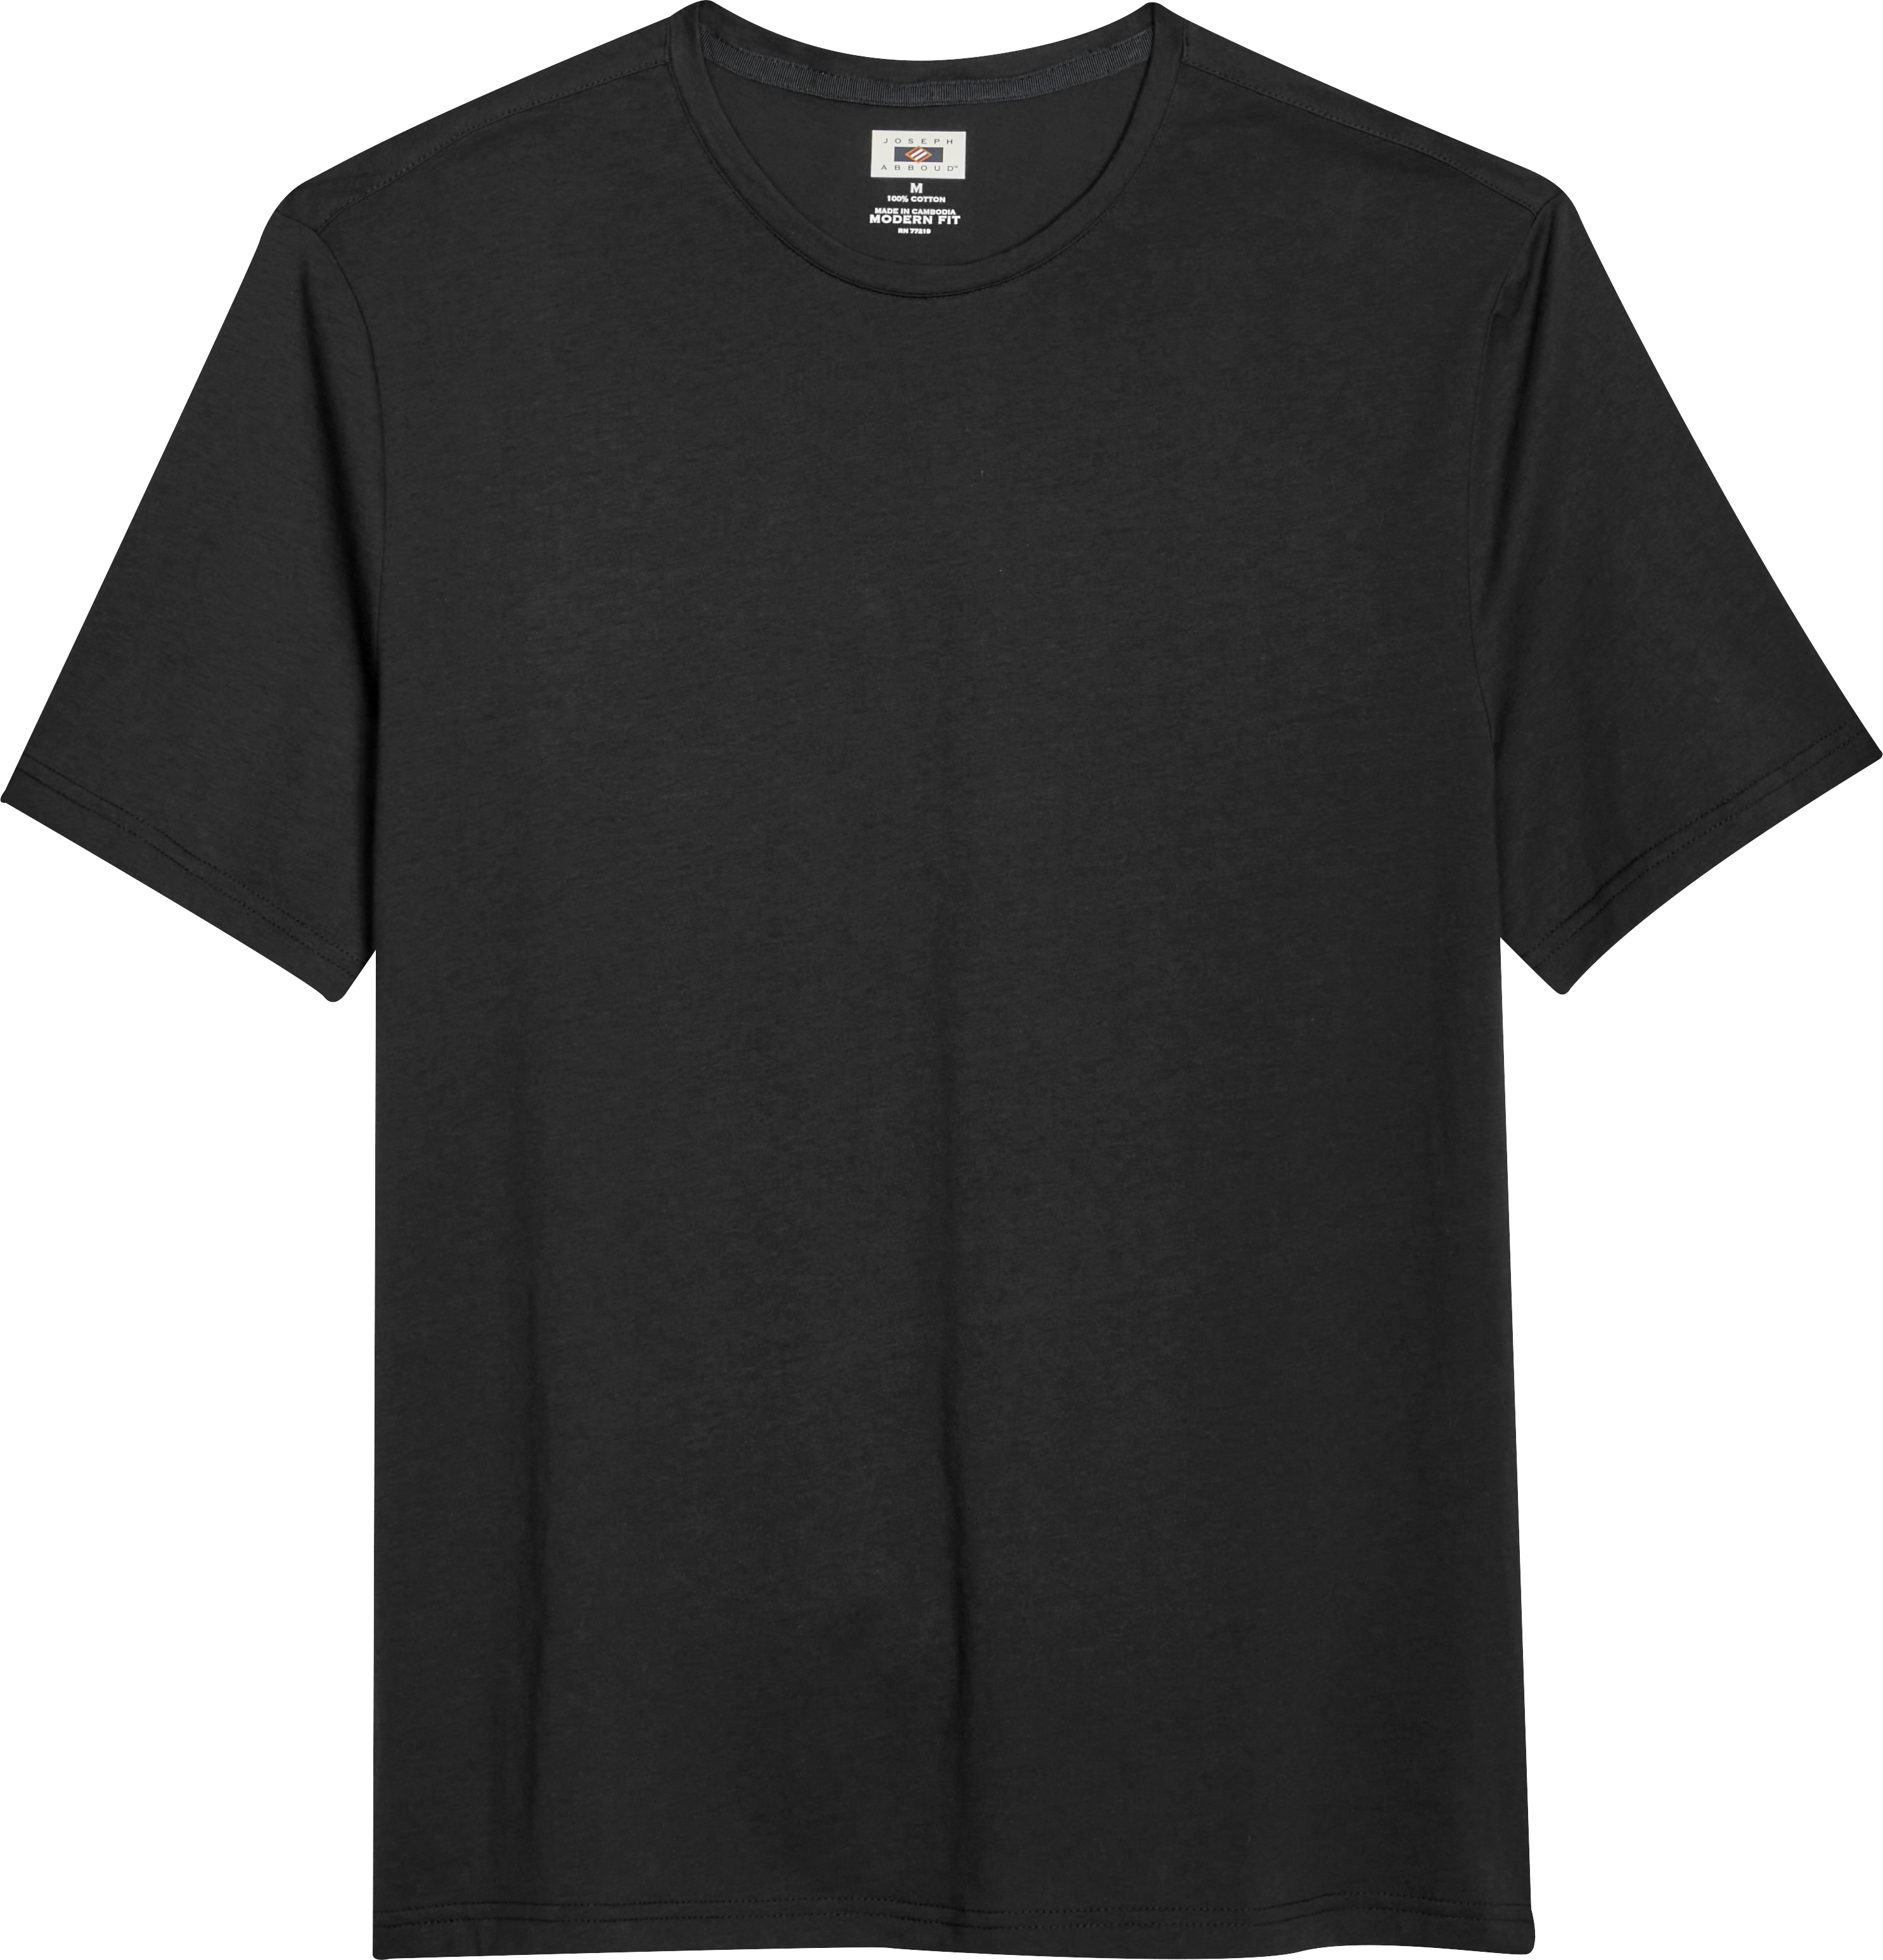 Joseph Abboud Modern Fit Luxe Cotton Jersey Knit Crew Neck T-Shirt